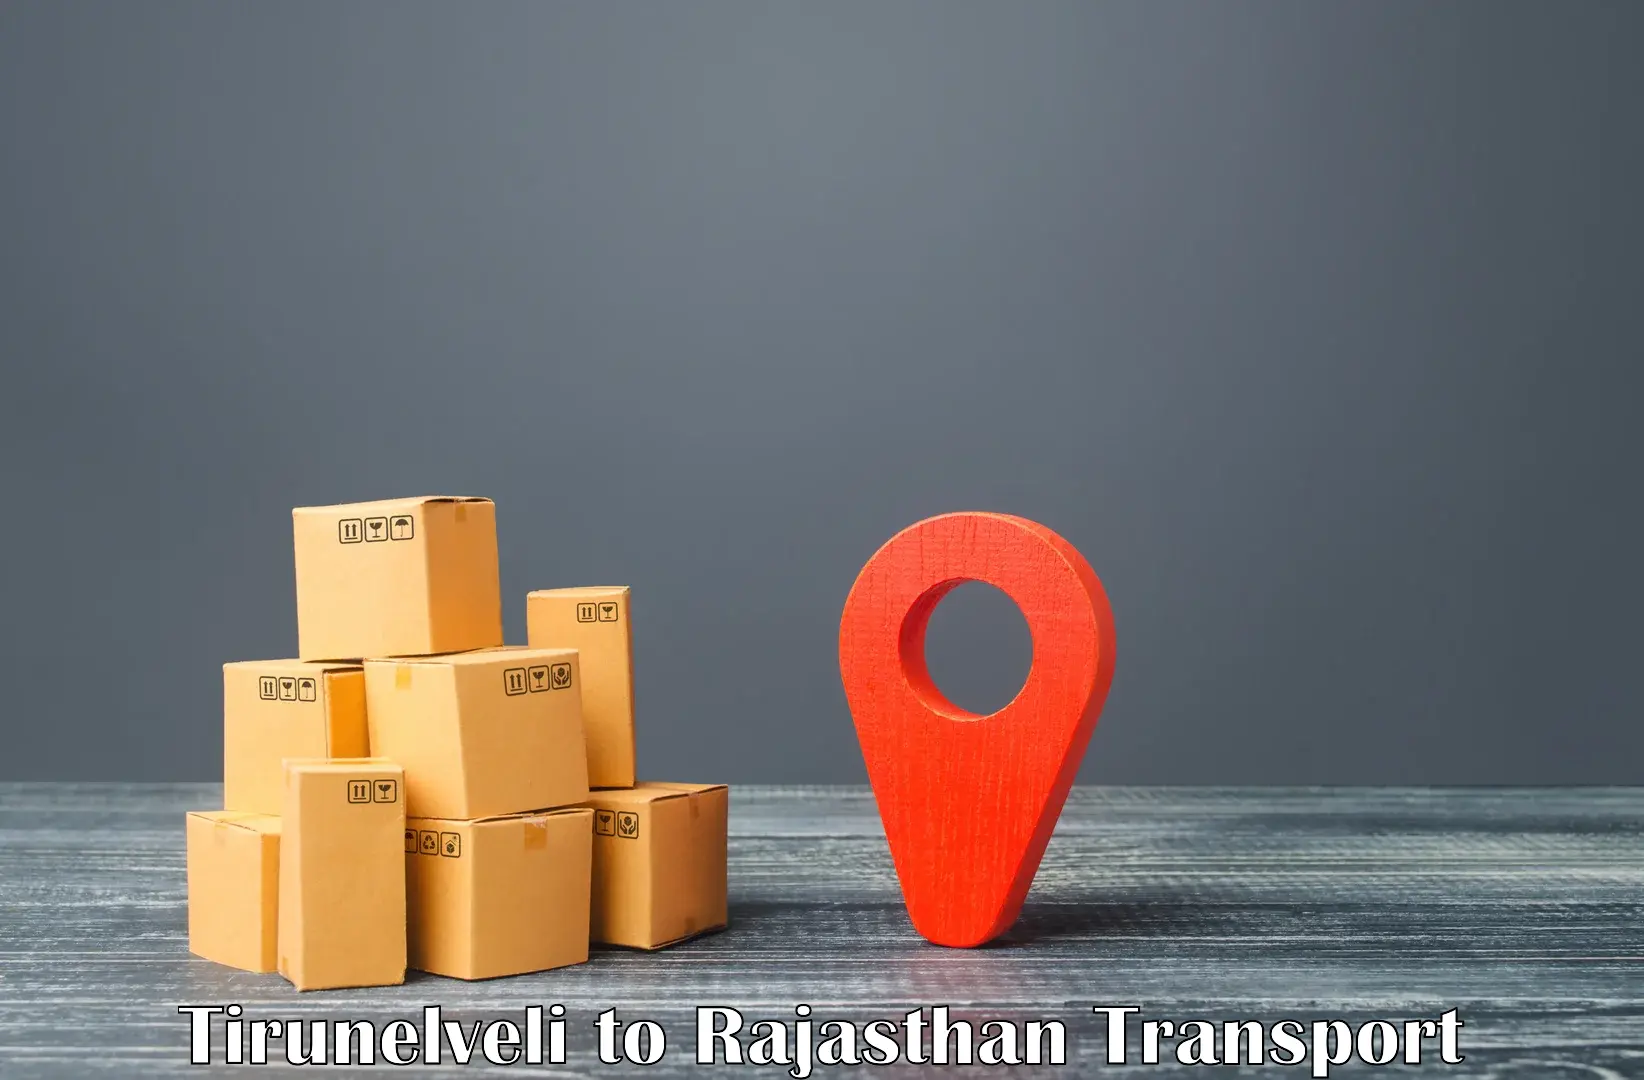 Furniture transport service Tirunelveli to Yathalakunta